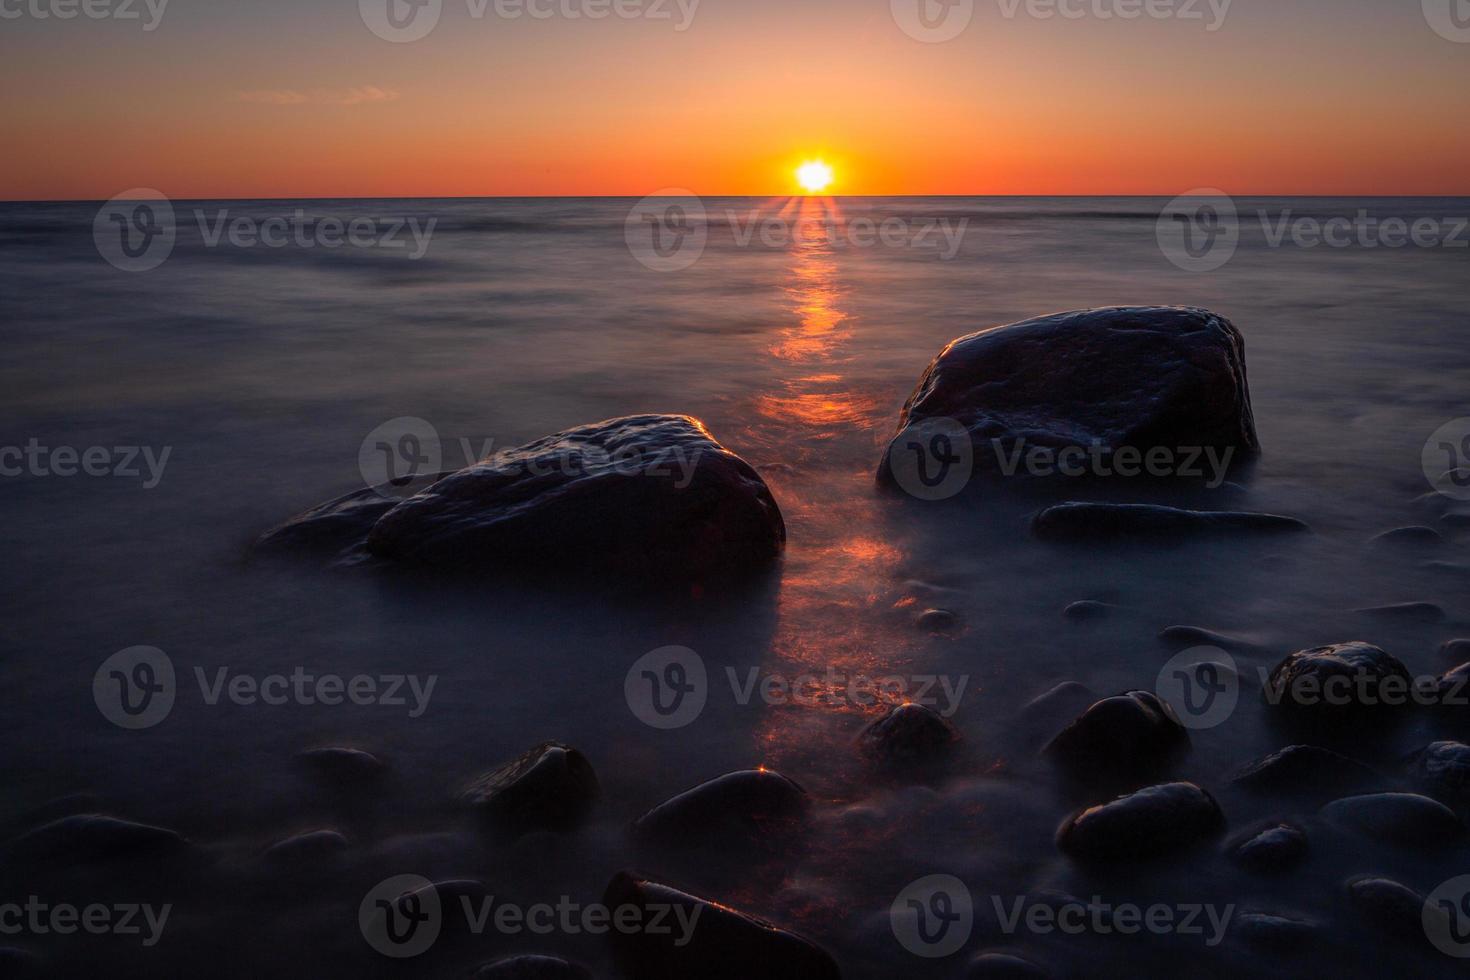 Steine an der Küste der Ostsee bei Sonnenuntergang foto